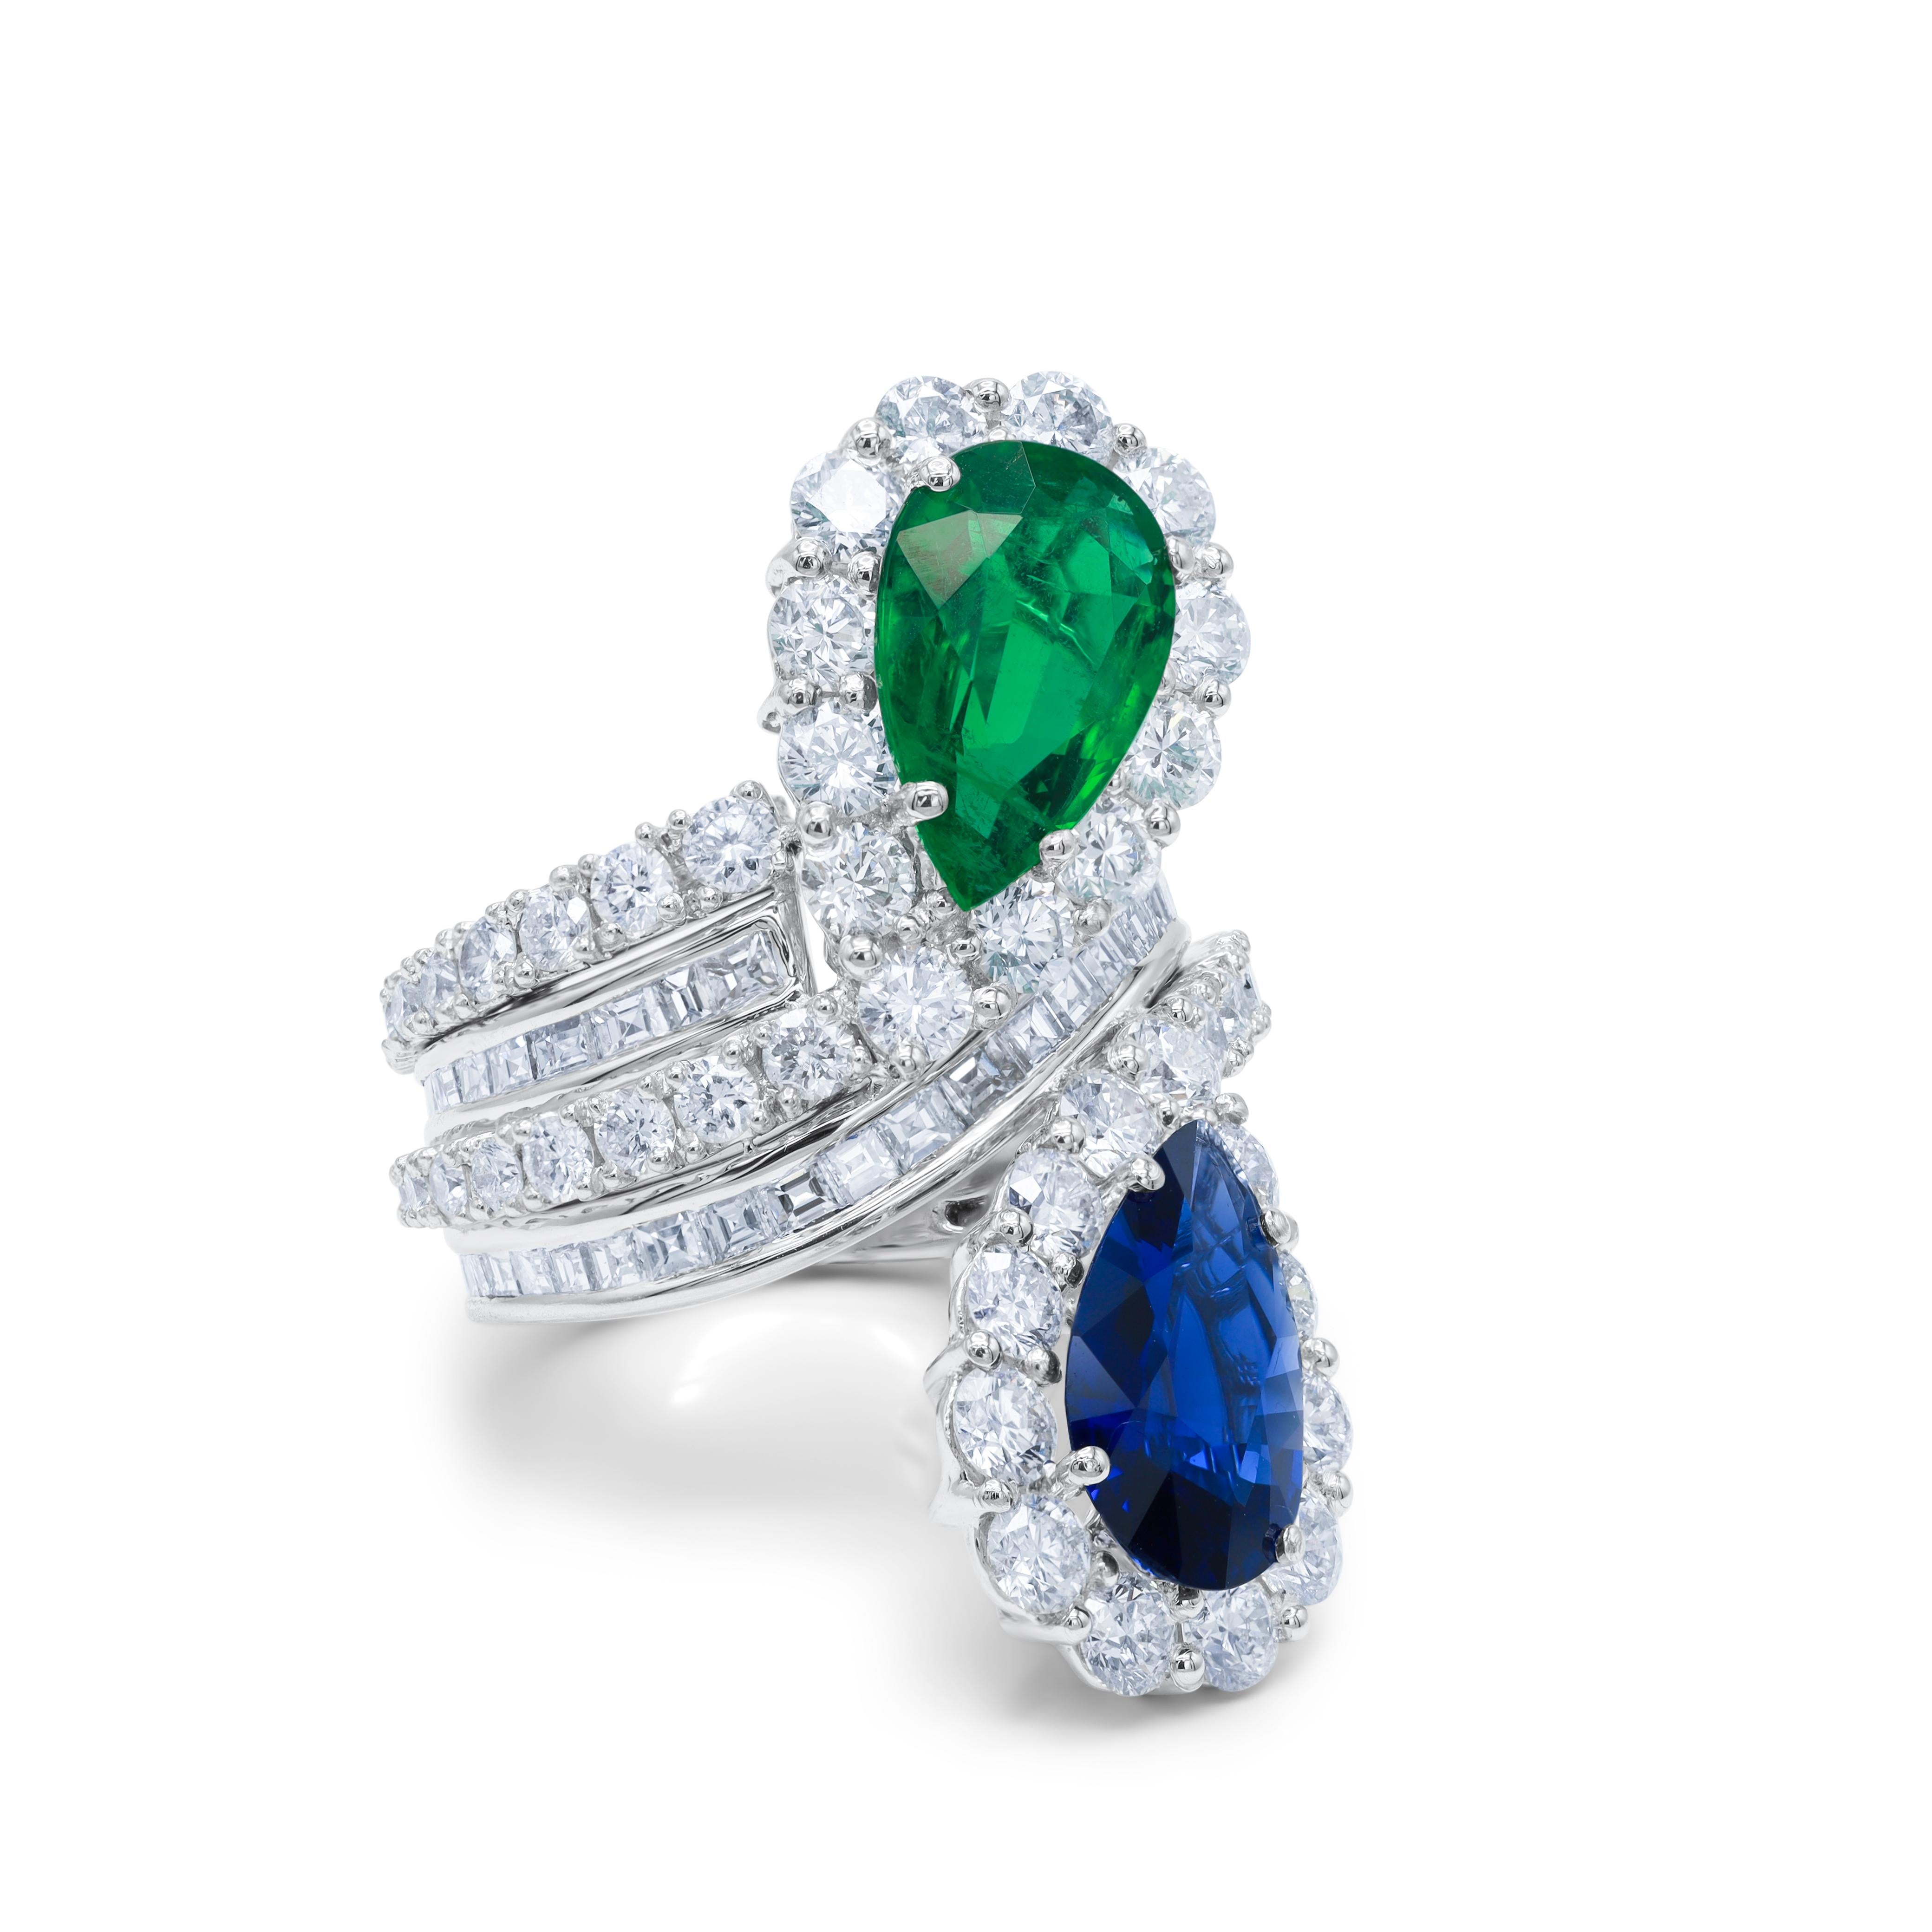 Saphir- und Smaragdring aus Platin in Spiralform mit einem birnenförmigen Saphir von 2,98 Karat und einem birnenförmigen Smaragd von 2,85 Karat, umgeben von 6,02 Karat Diamanten (A.I.C. zertifiziert).
Diana M. ist seit über 35 Jahren ein führender